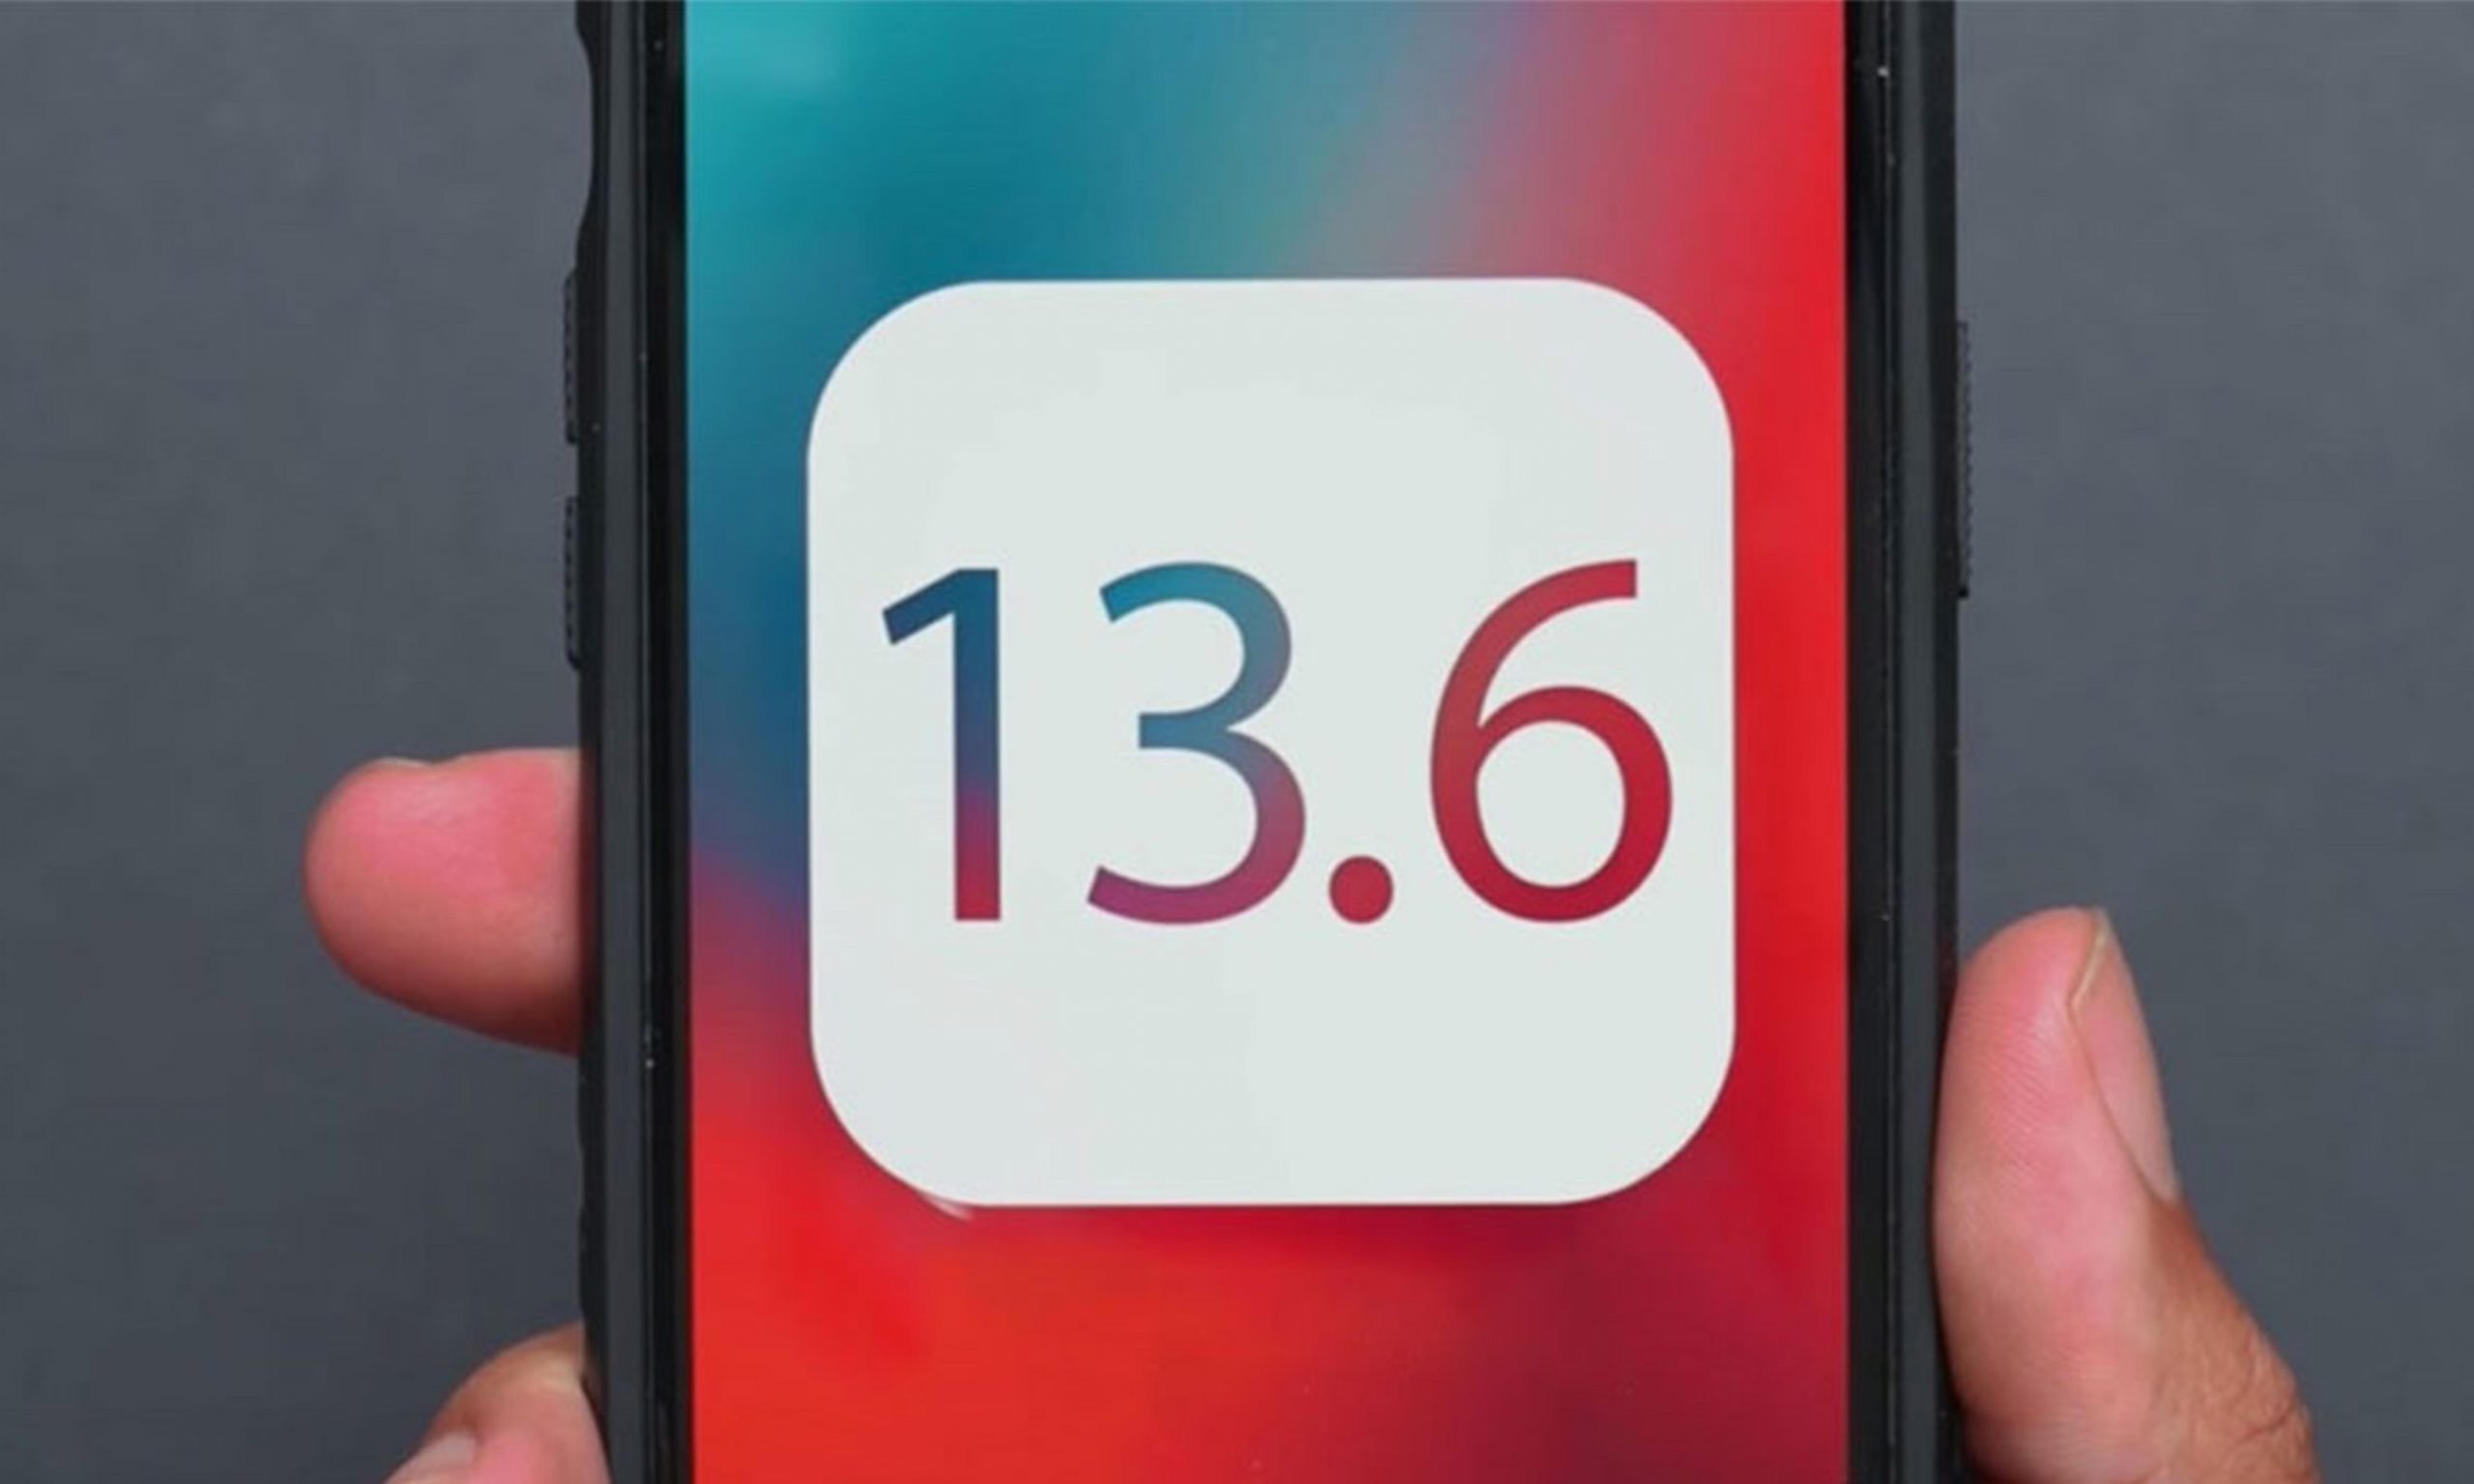 苹果发布 iOS 13.6 正式版